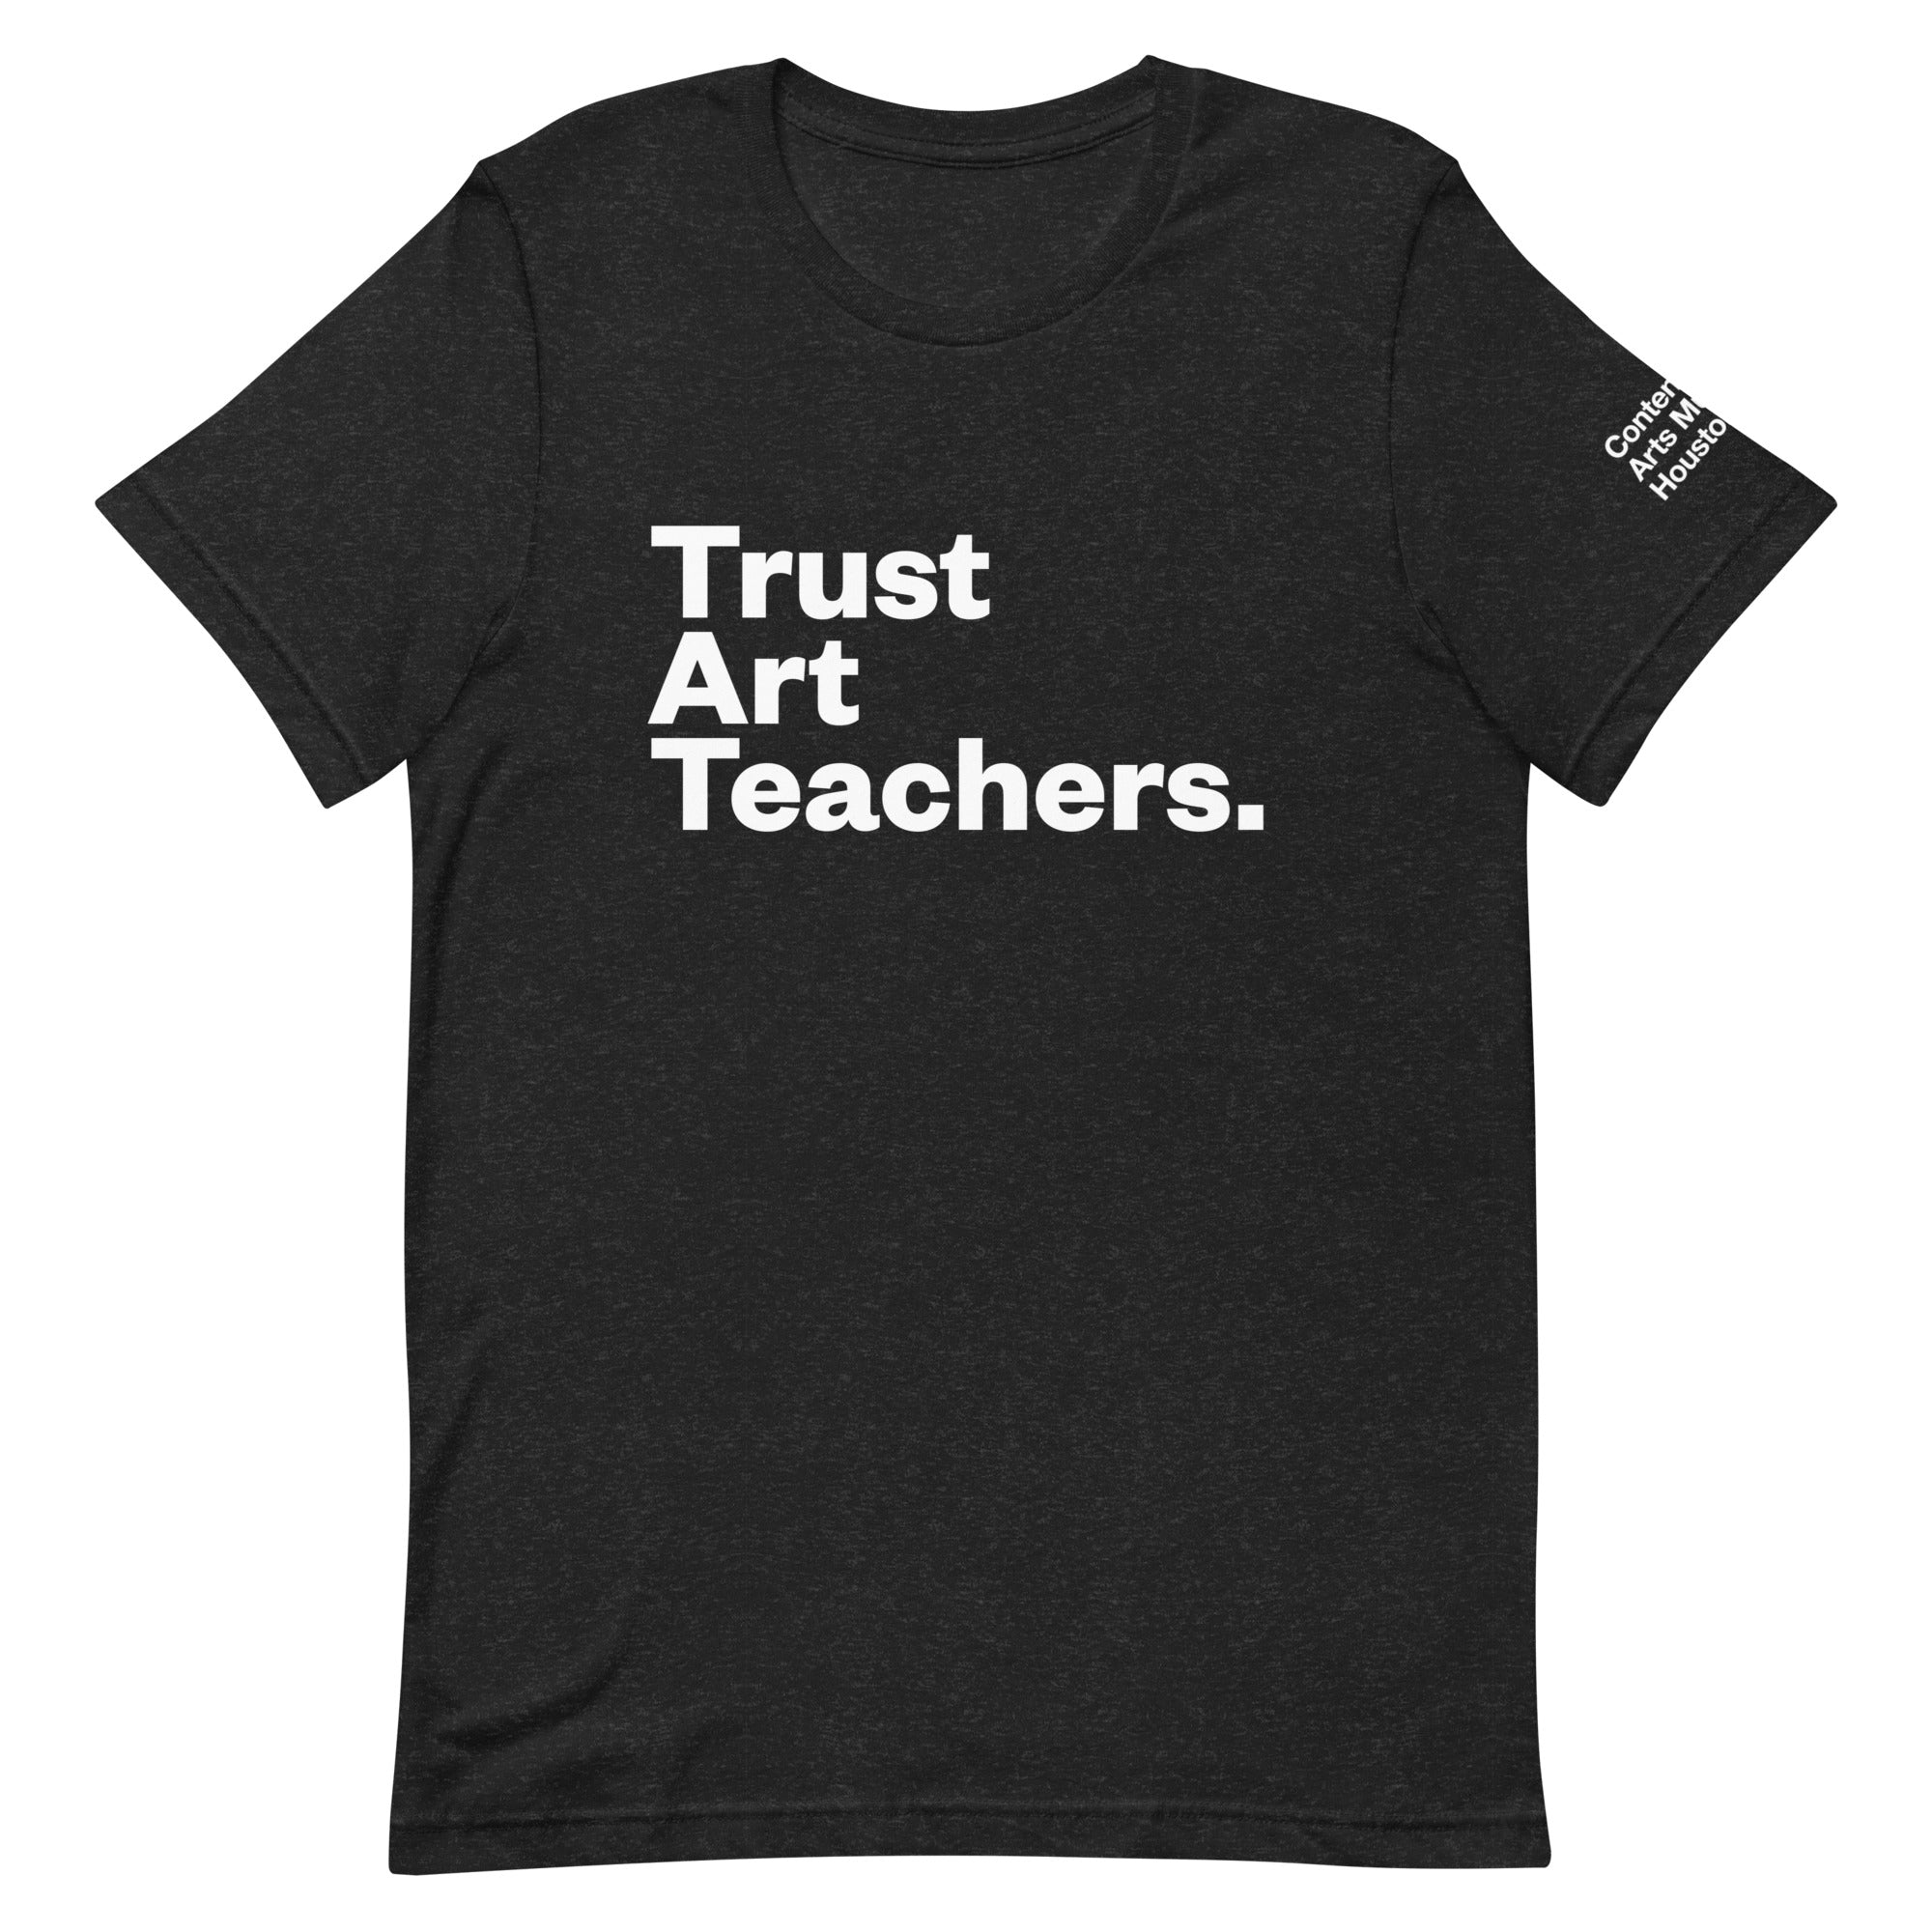 Trust Art Teachers Tee